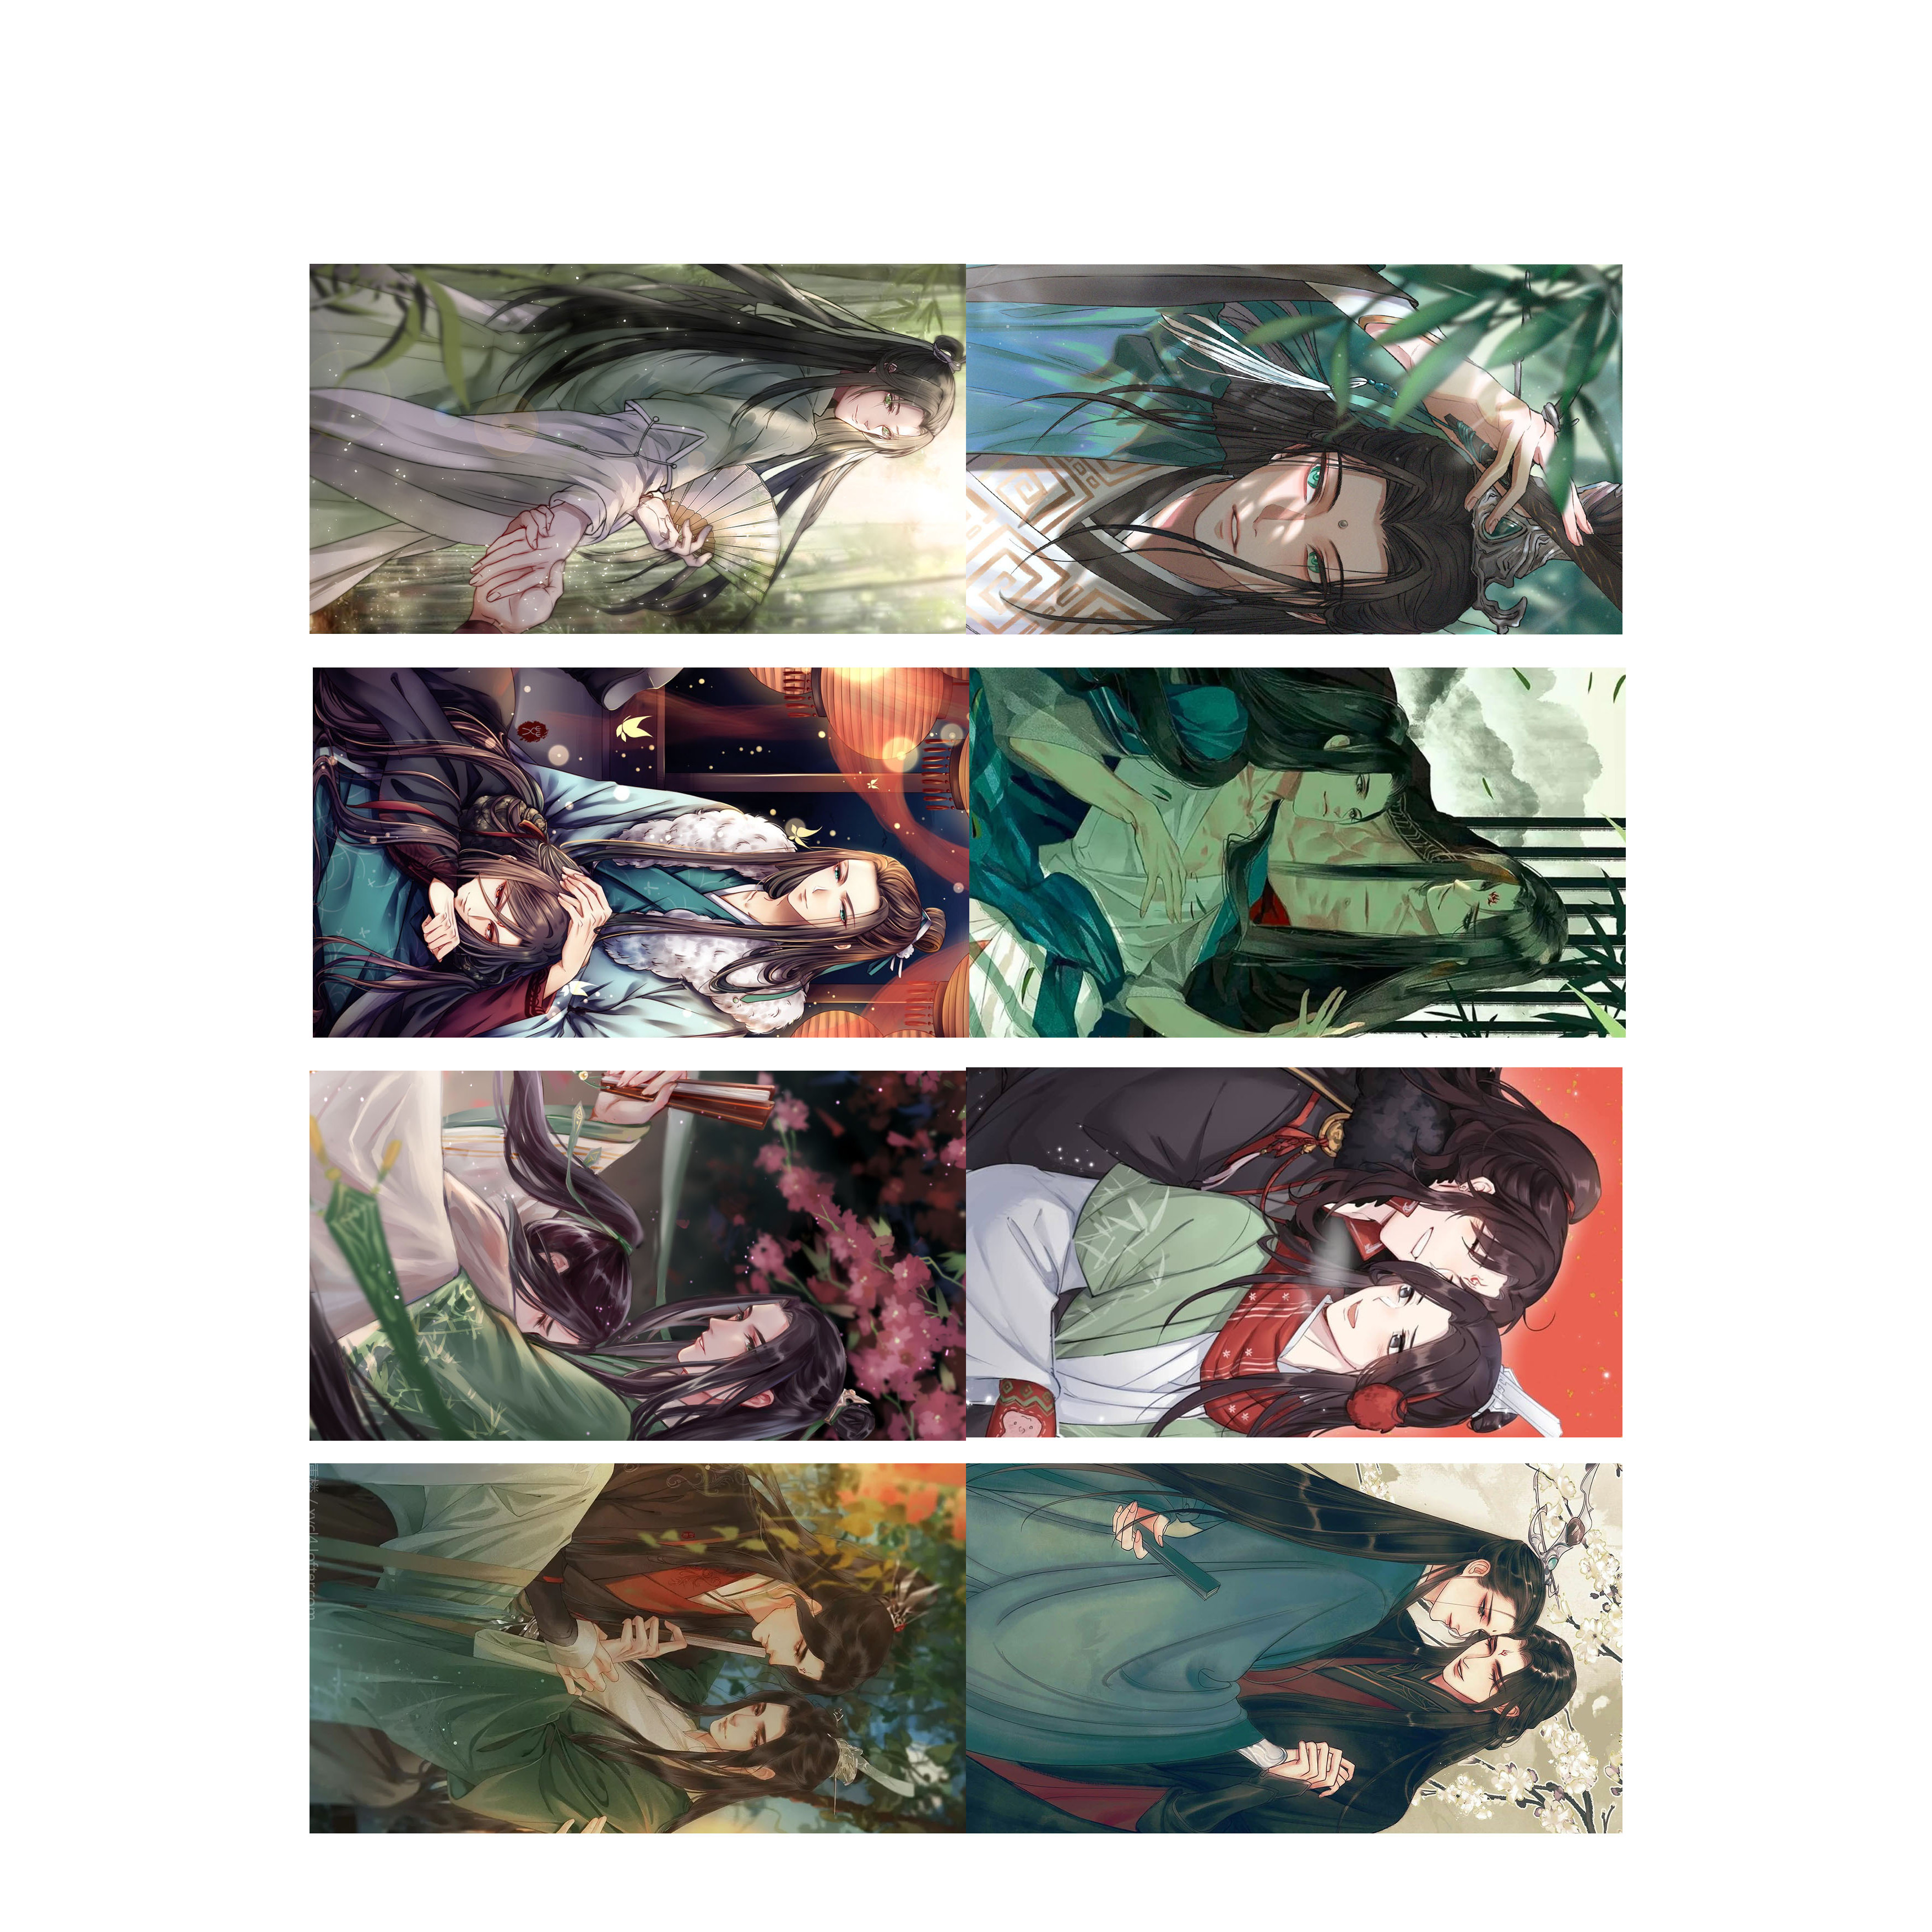 Poster 8 tấm A4 Hệ Thống Tự Cứu Của Nhân Vật Phản Diện anime đam mĩ tranh treo album ảnh in hình đẹp (MẪU GIAO NGẪU NHIÊN)